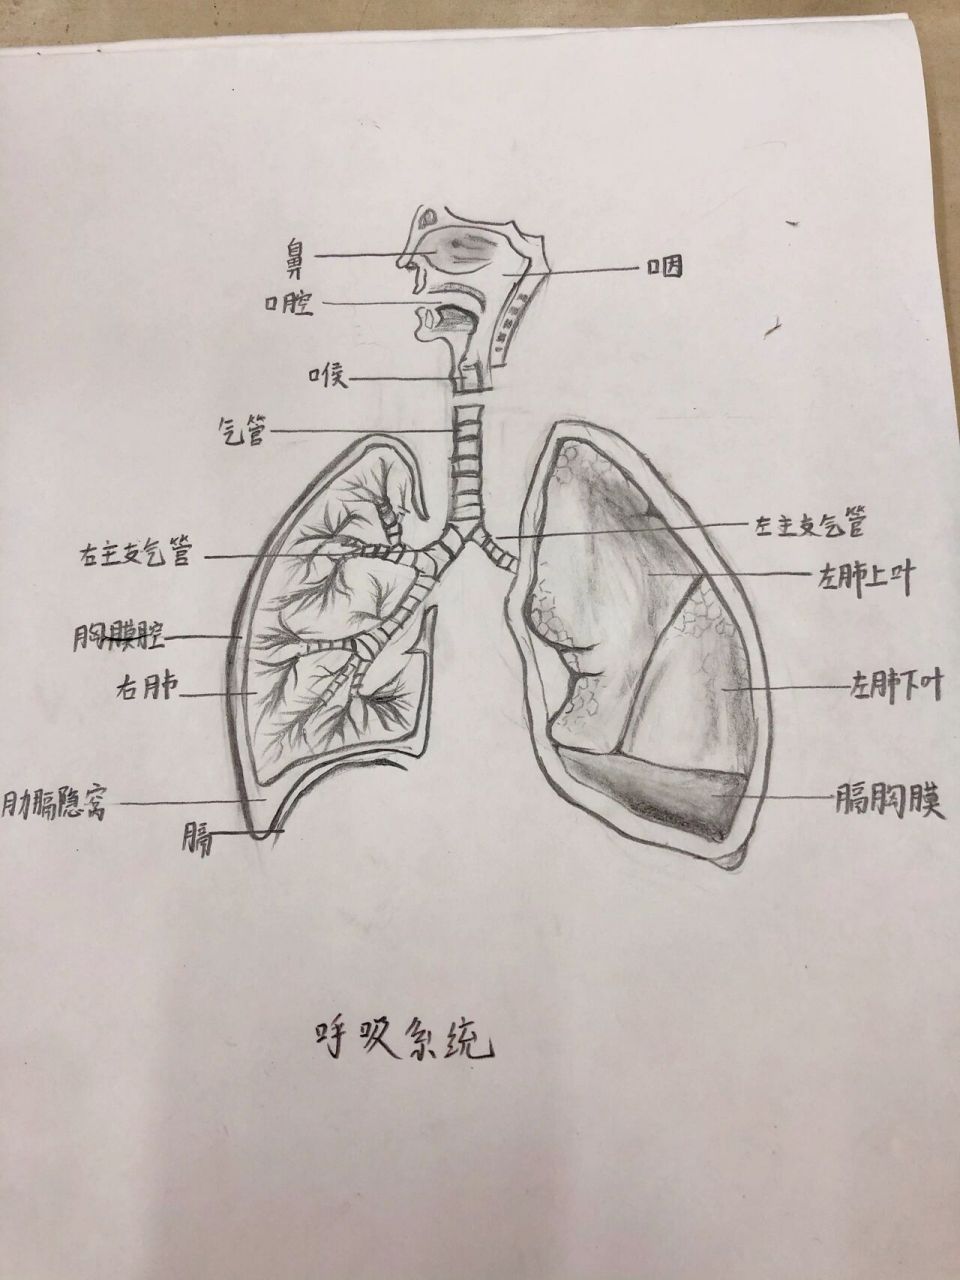 人体呼吸系统图简笔画图片